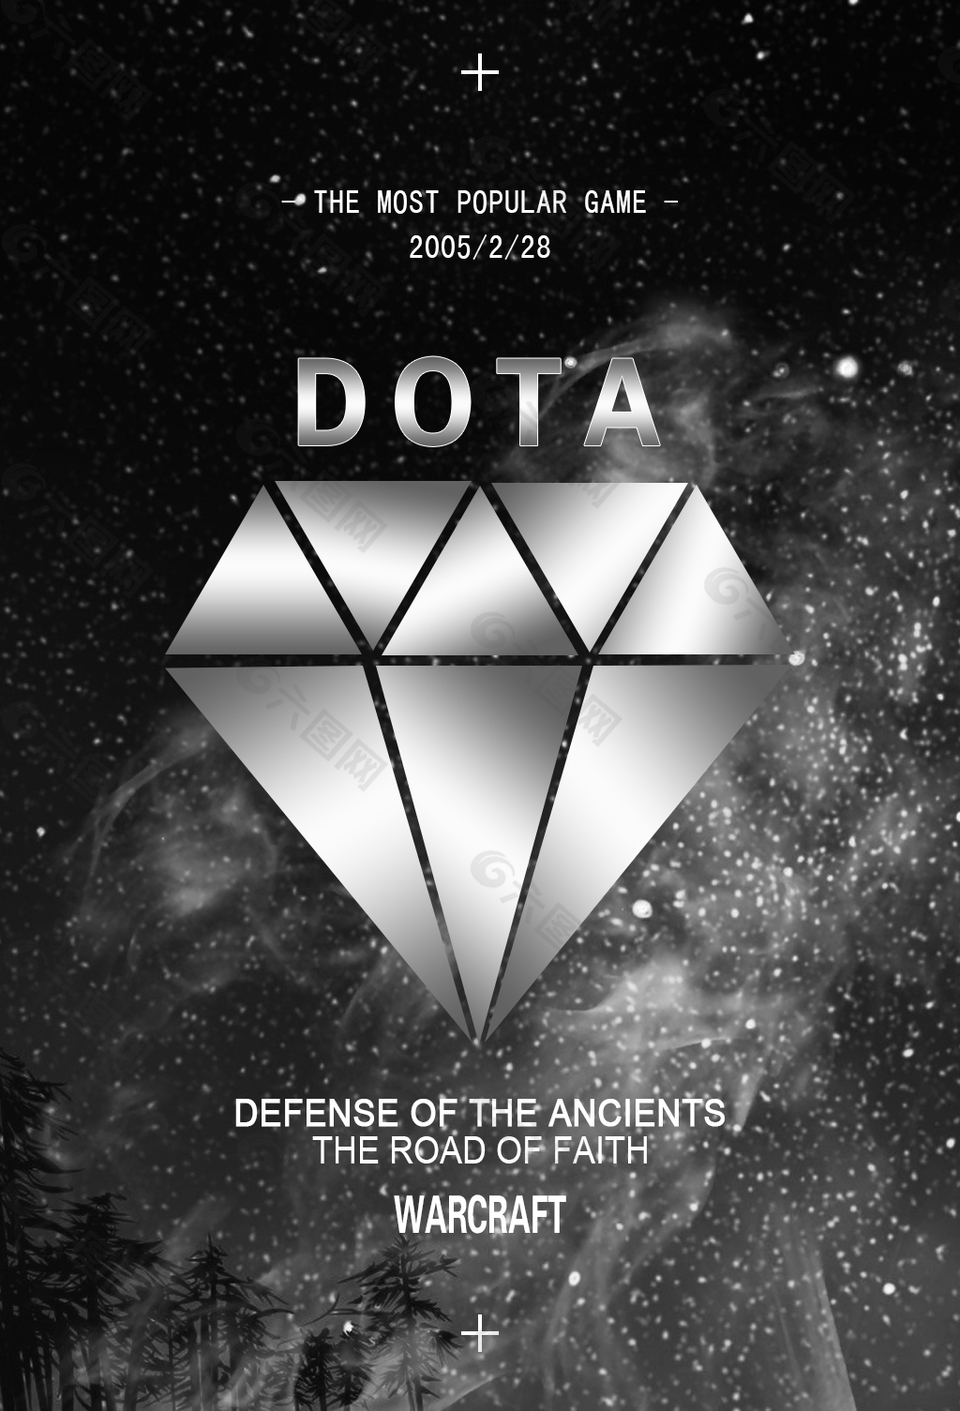 黑白星空DOTA音乐海报设计